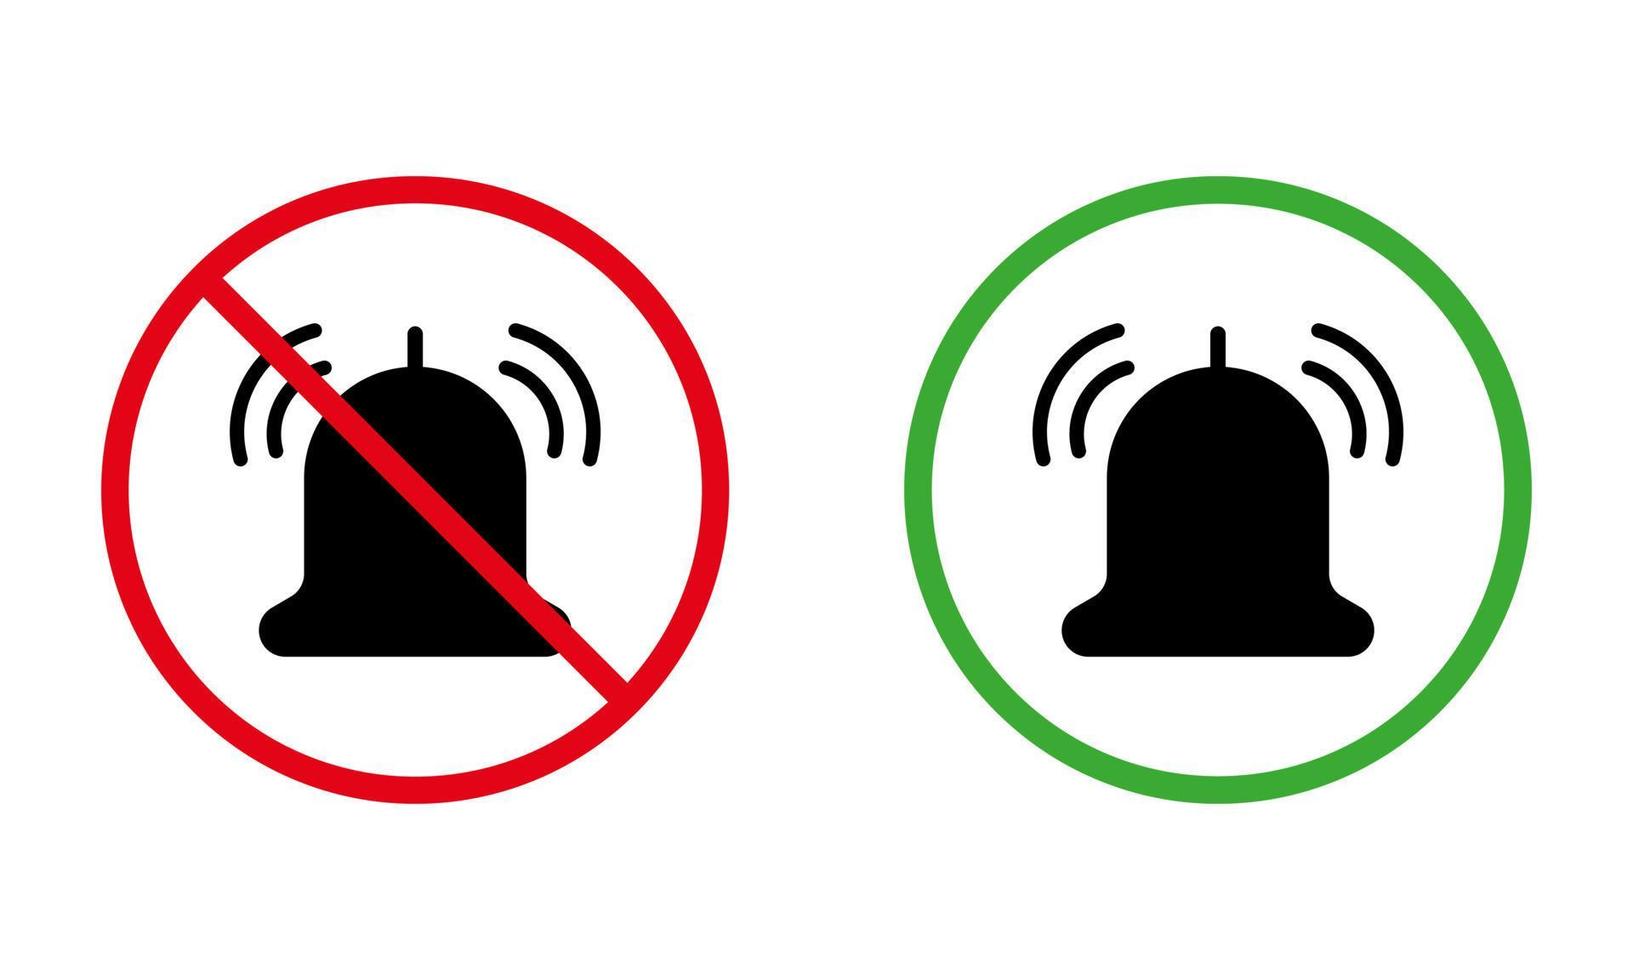 Klingeln schwarze Silhouette Symbolsatz. Beachten Sie das rote verbotene runde Schild der stillen Zone. klingeln telefon lauter lautstärke zulässiger bereich grünes symbol. Aufmerksamkeitsbenachrichtigung aus Stummschaltung. isolierte vektorillustration. vektor